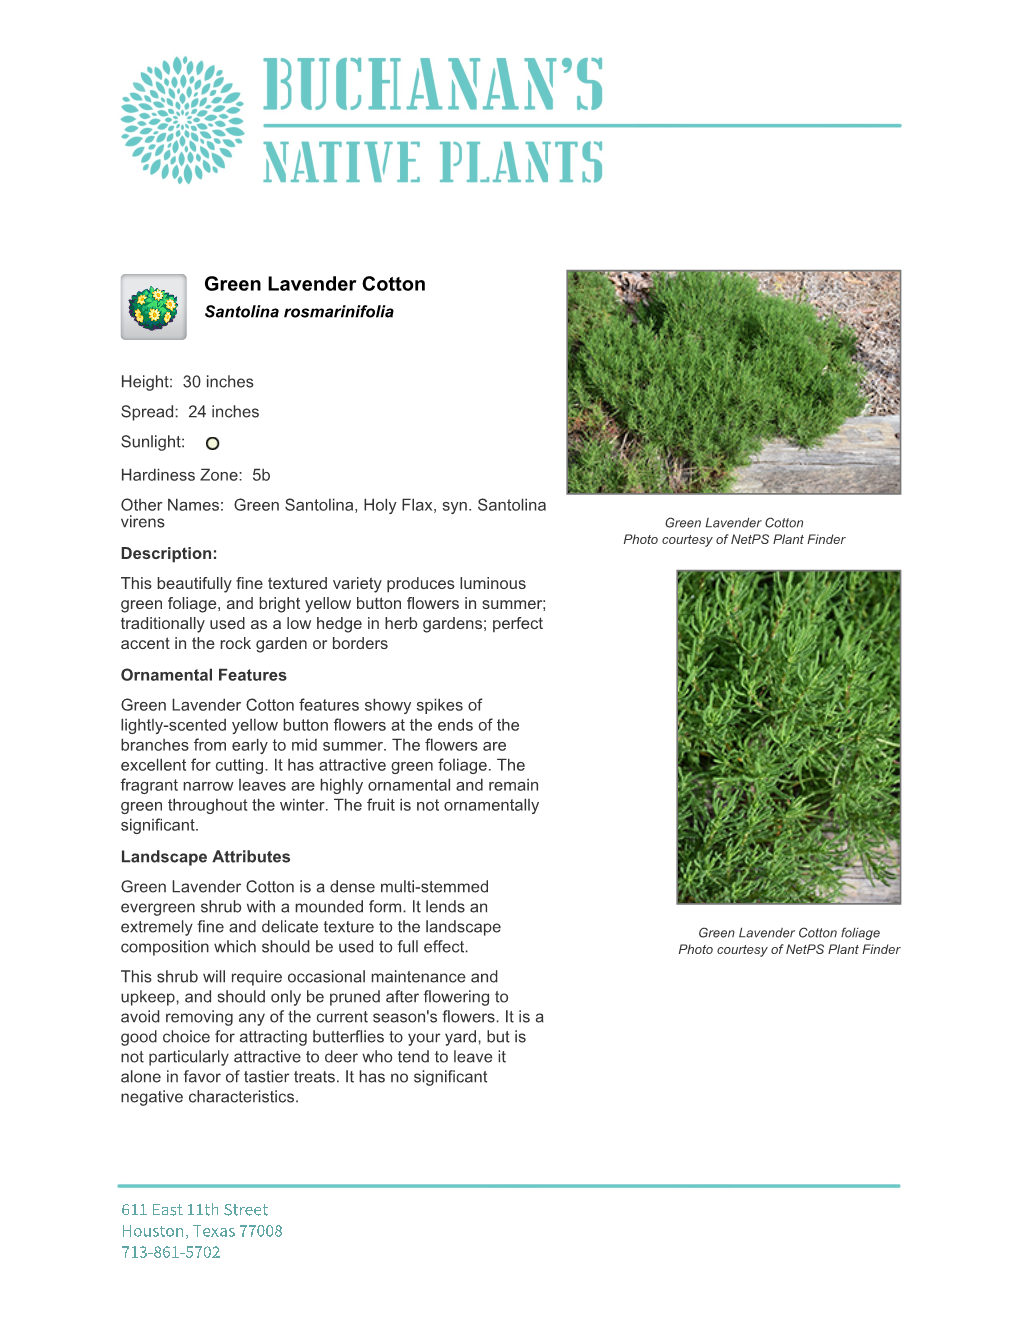 Buchanan's Native Plants Green Lavender Cotton